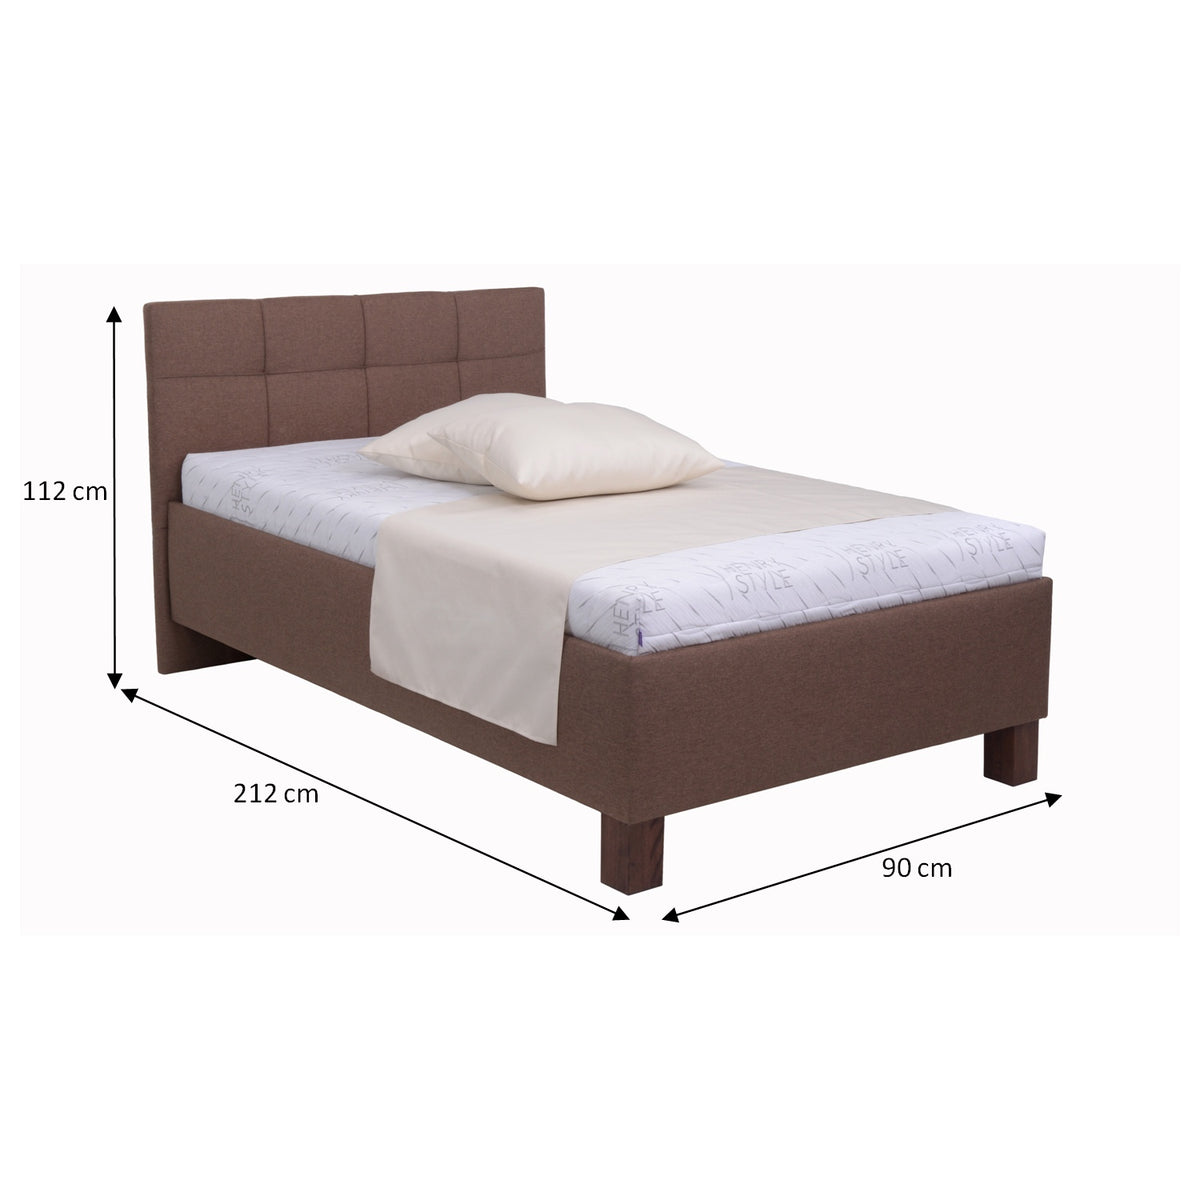 Čalouněná postel Mary 90x200, hnědá, včetně matrace